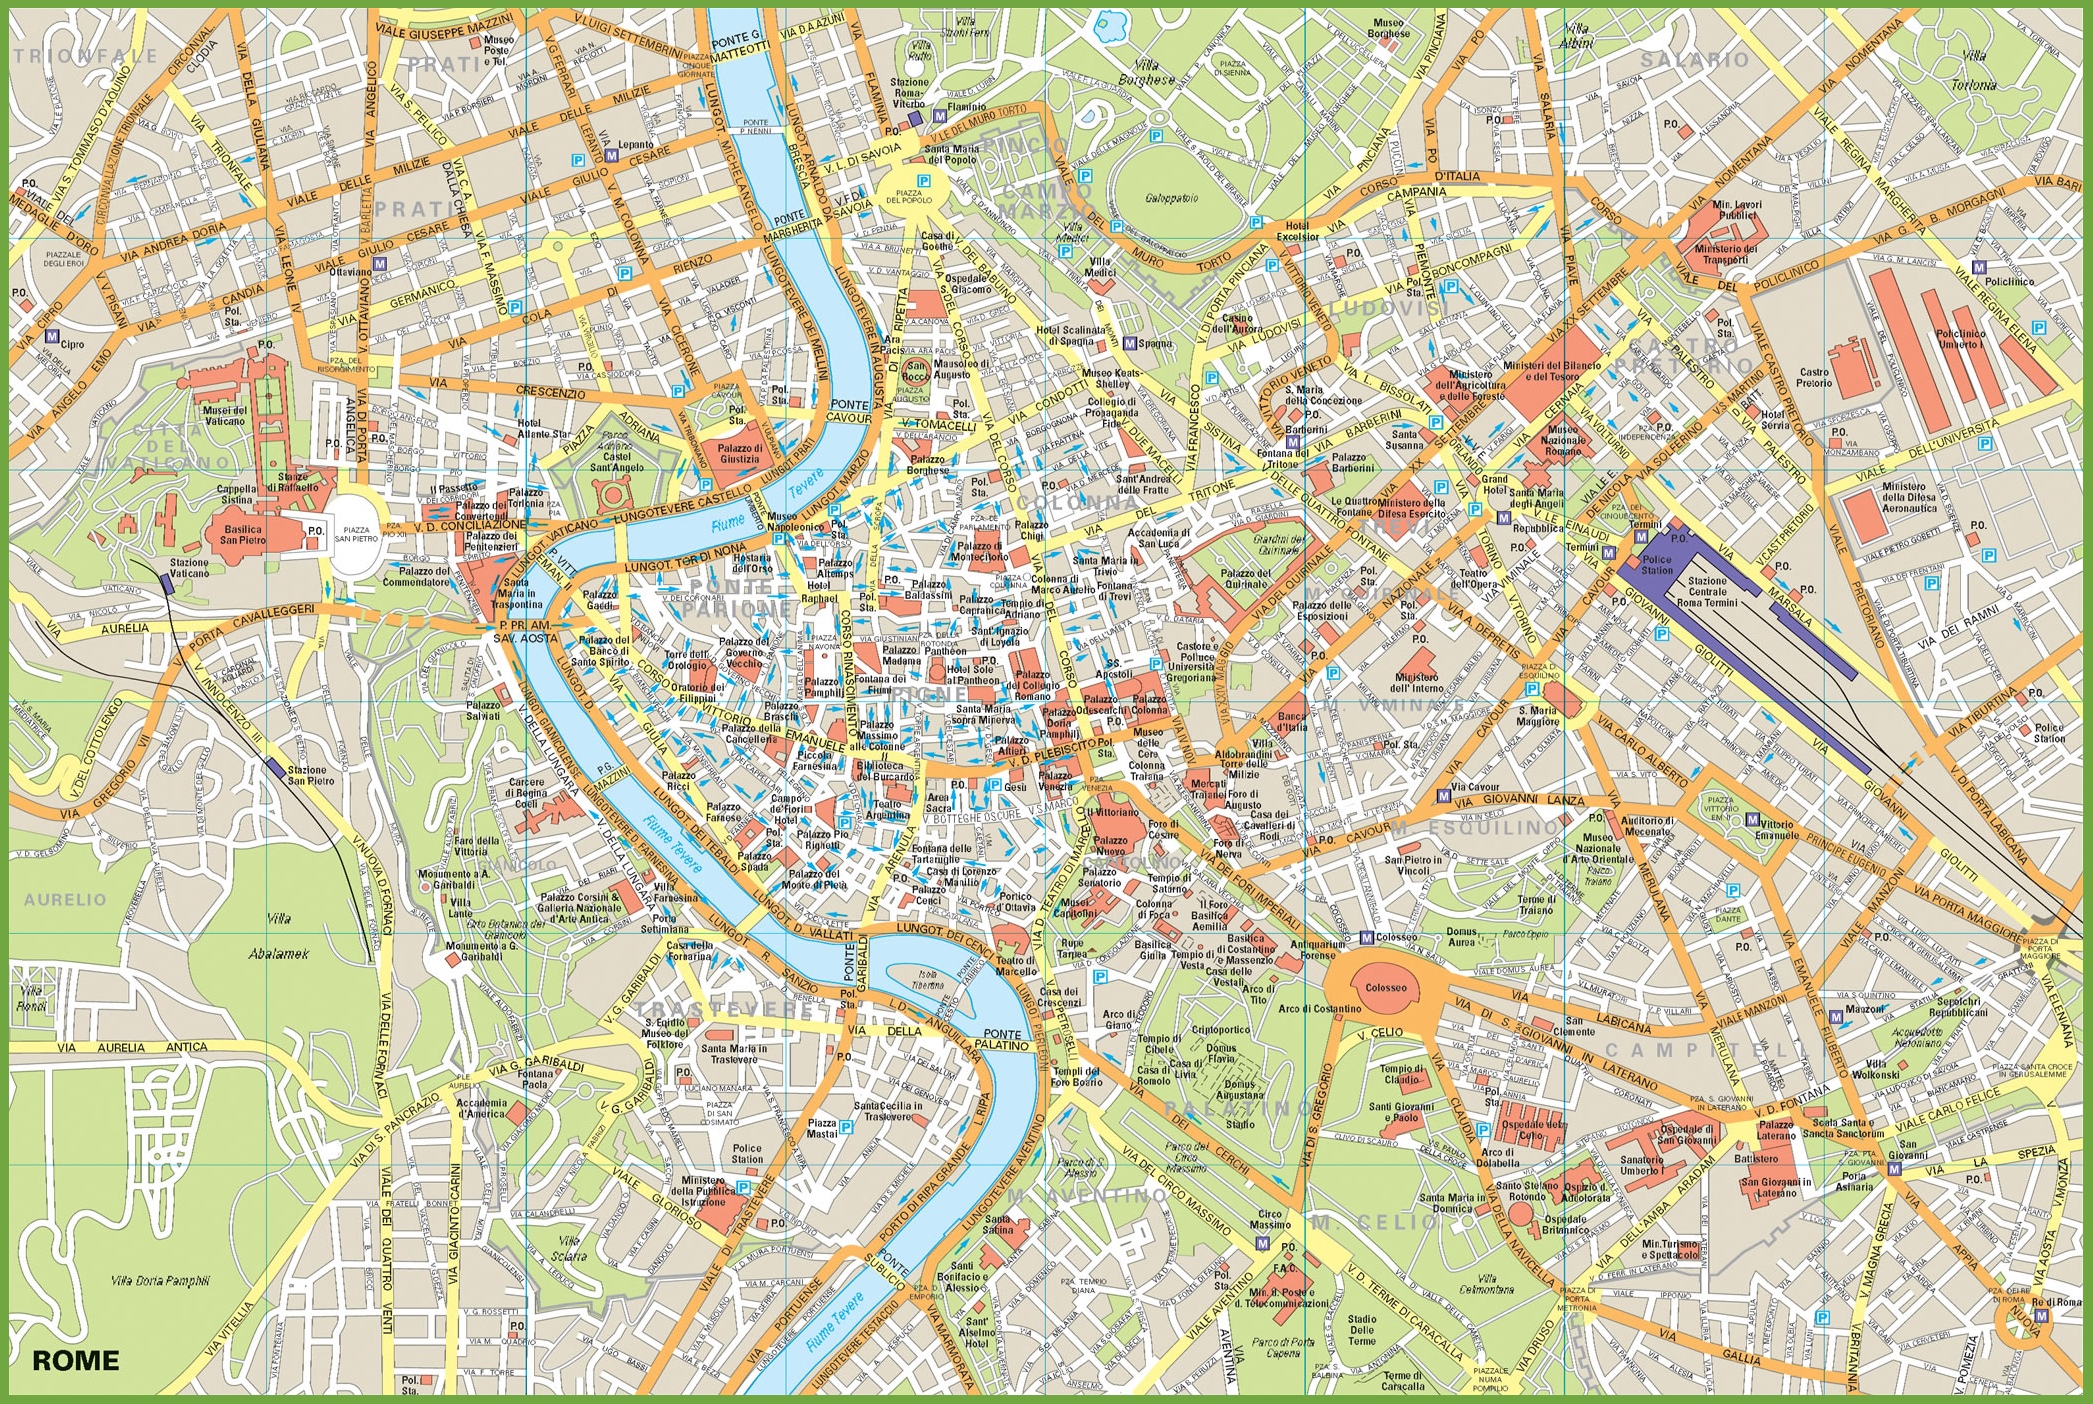 cartina-mappa-metropolitana-roma-images-and-photos-finder